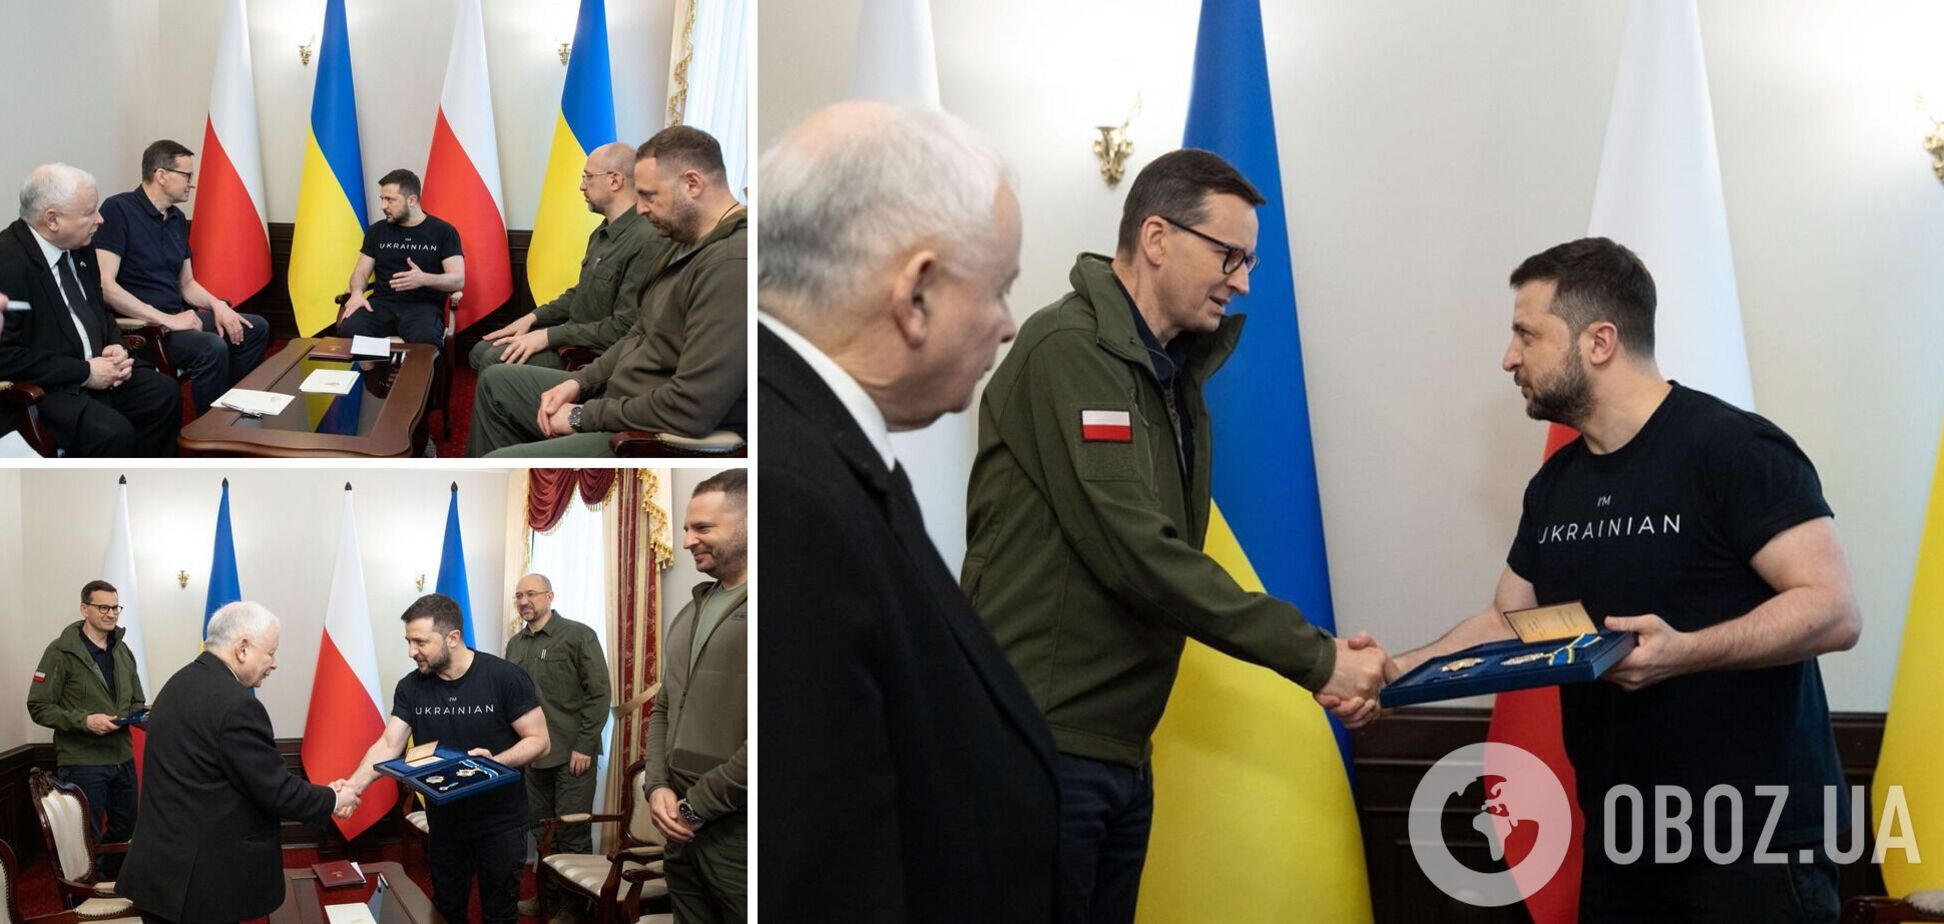 Історична подія: Україна та Польща вперше провели міжурядові консультації. Фото